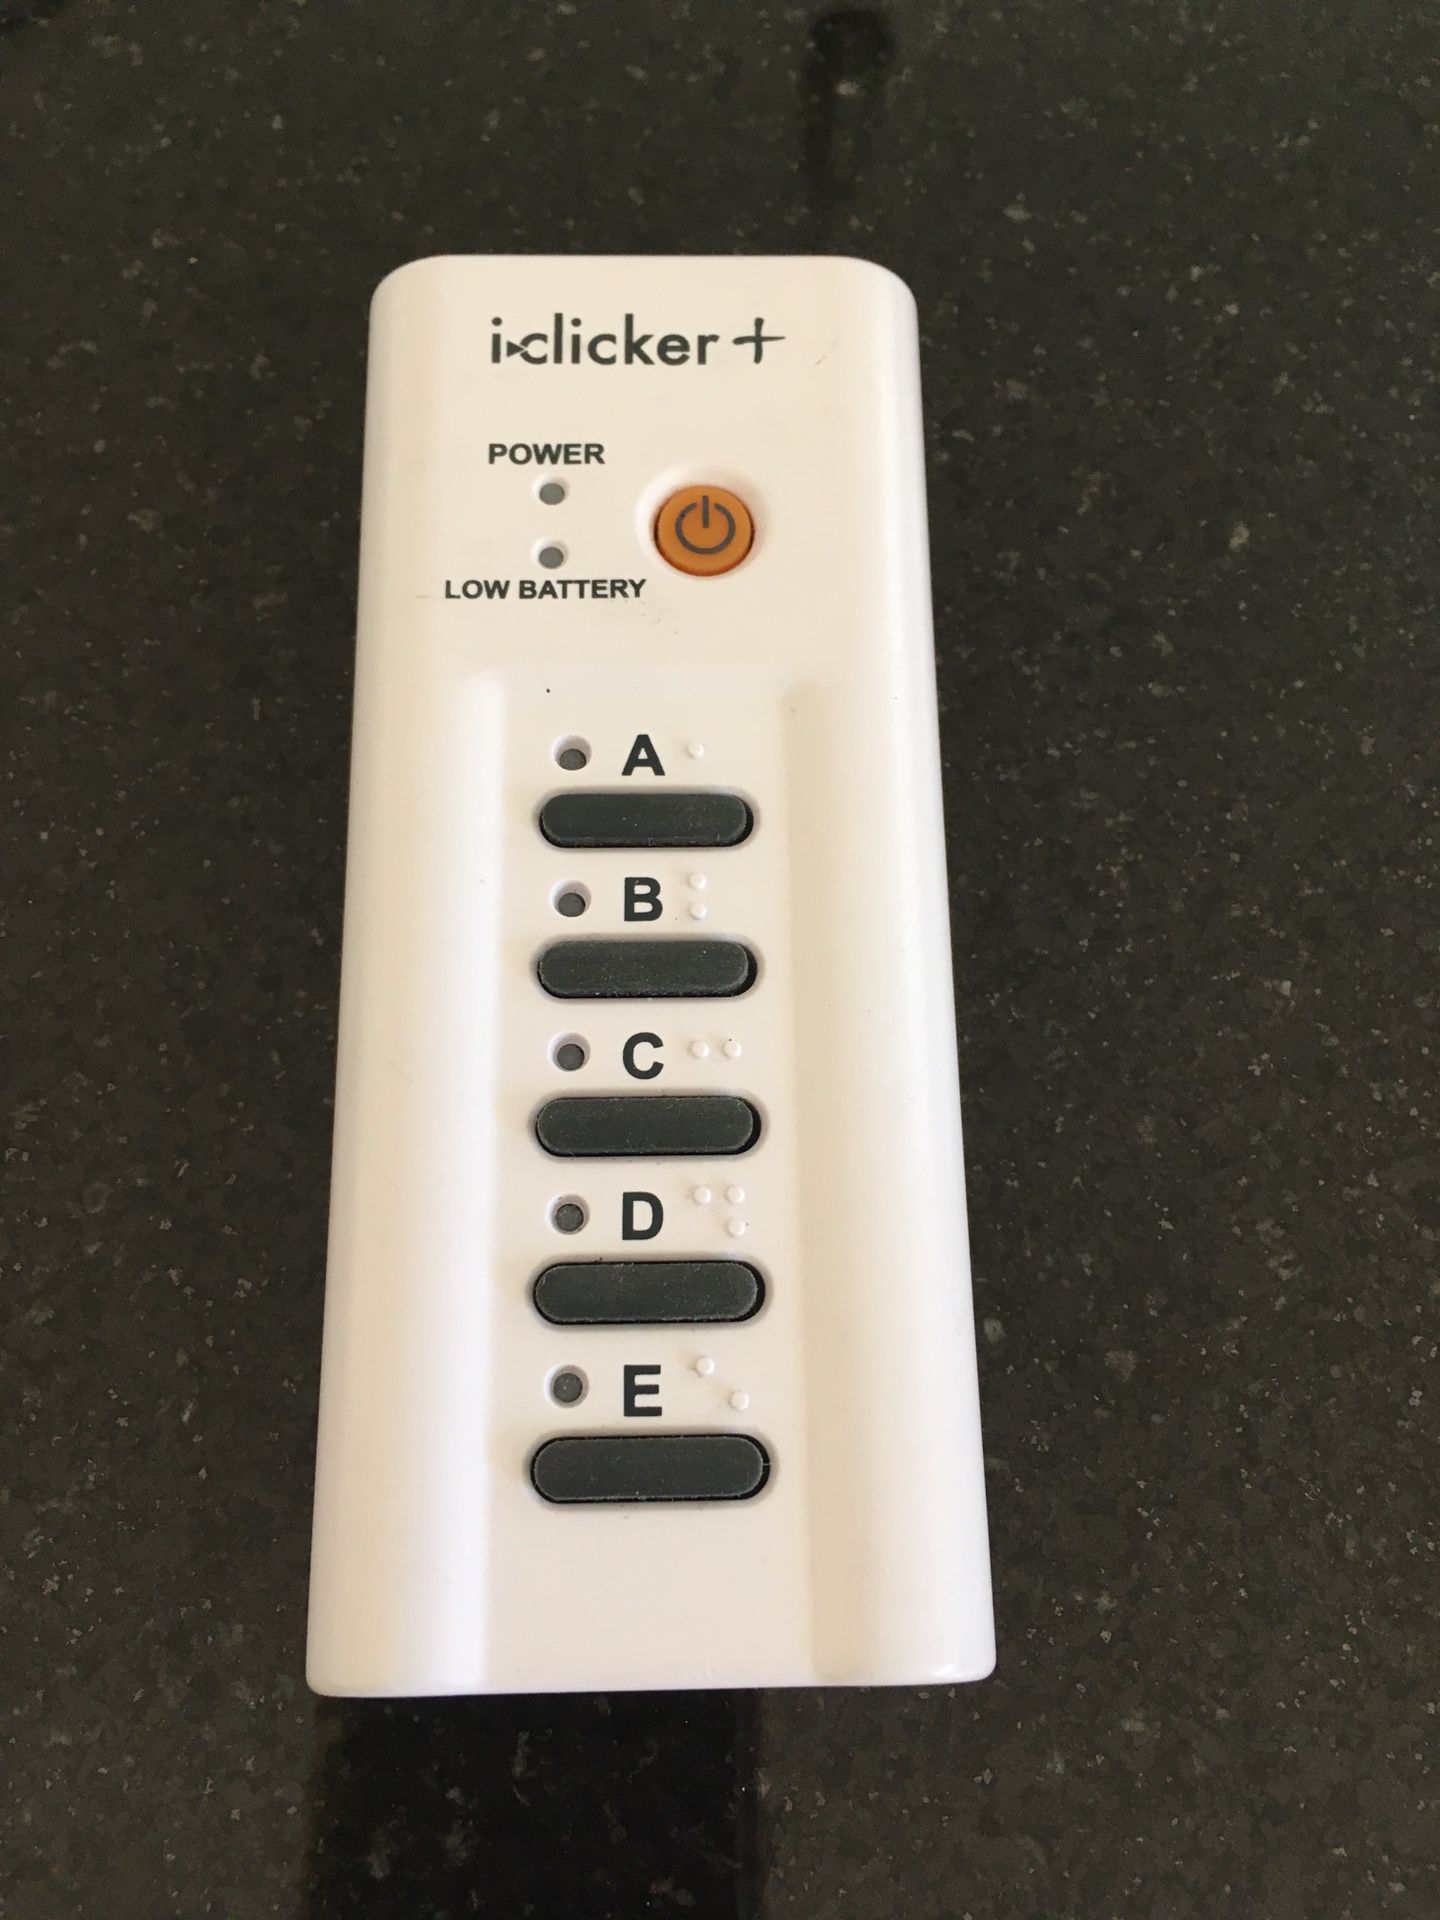 I clicker + student remote model RLR 15